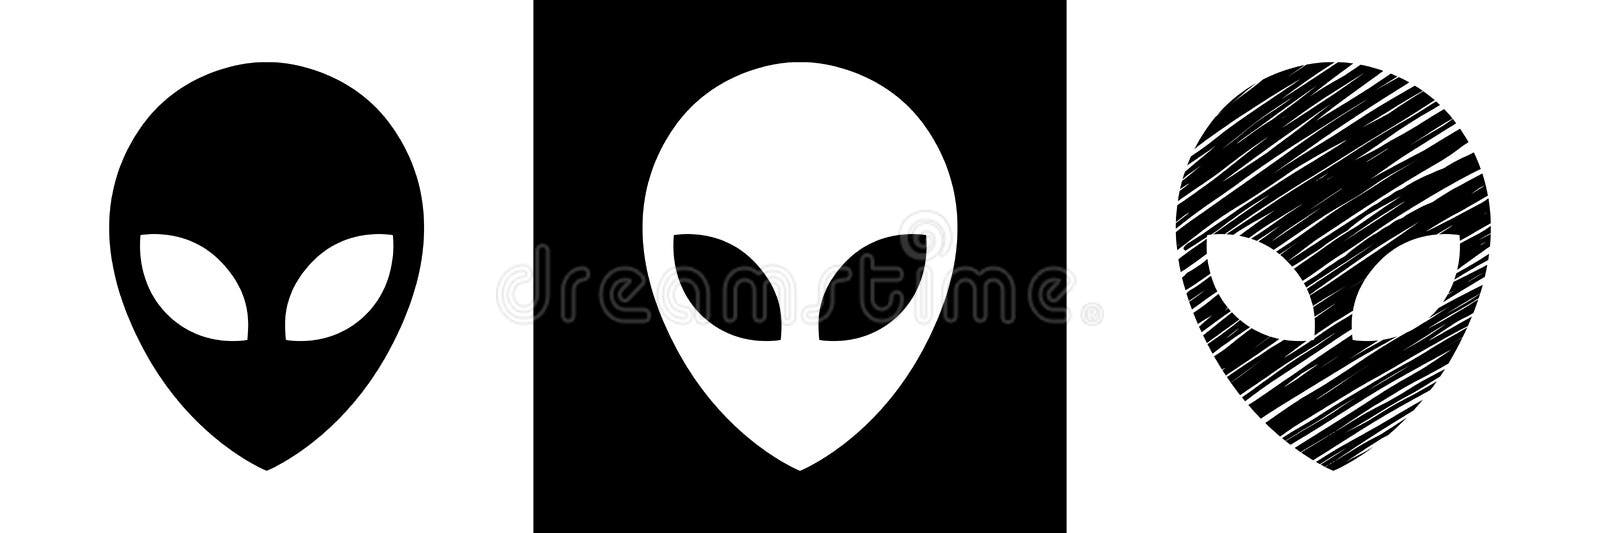 Alien Em Um Traje Espacial, Estilo De Desenho Animado, Espaço De Fundo,  Vetor Isolado Royalty Free SVG, Cliparts, Vetores, e Ilustrações Stock.  Image 100998325